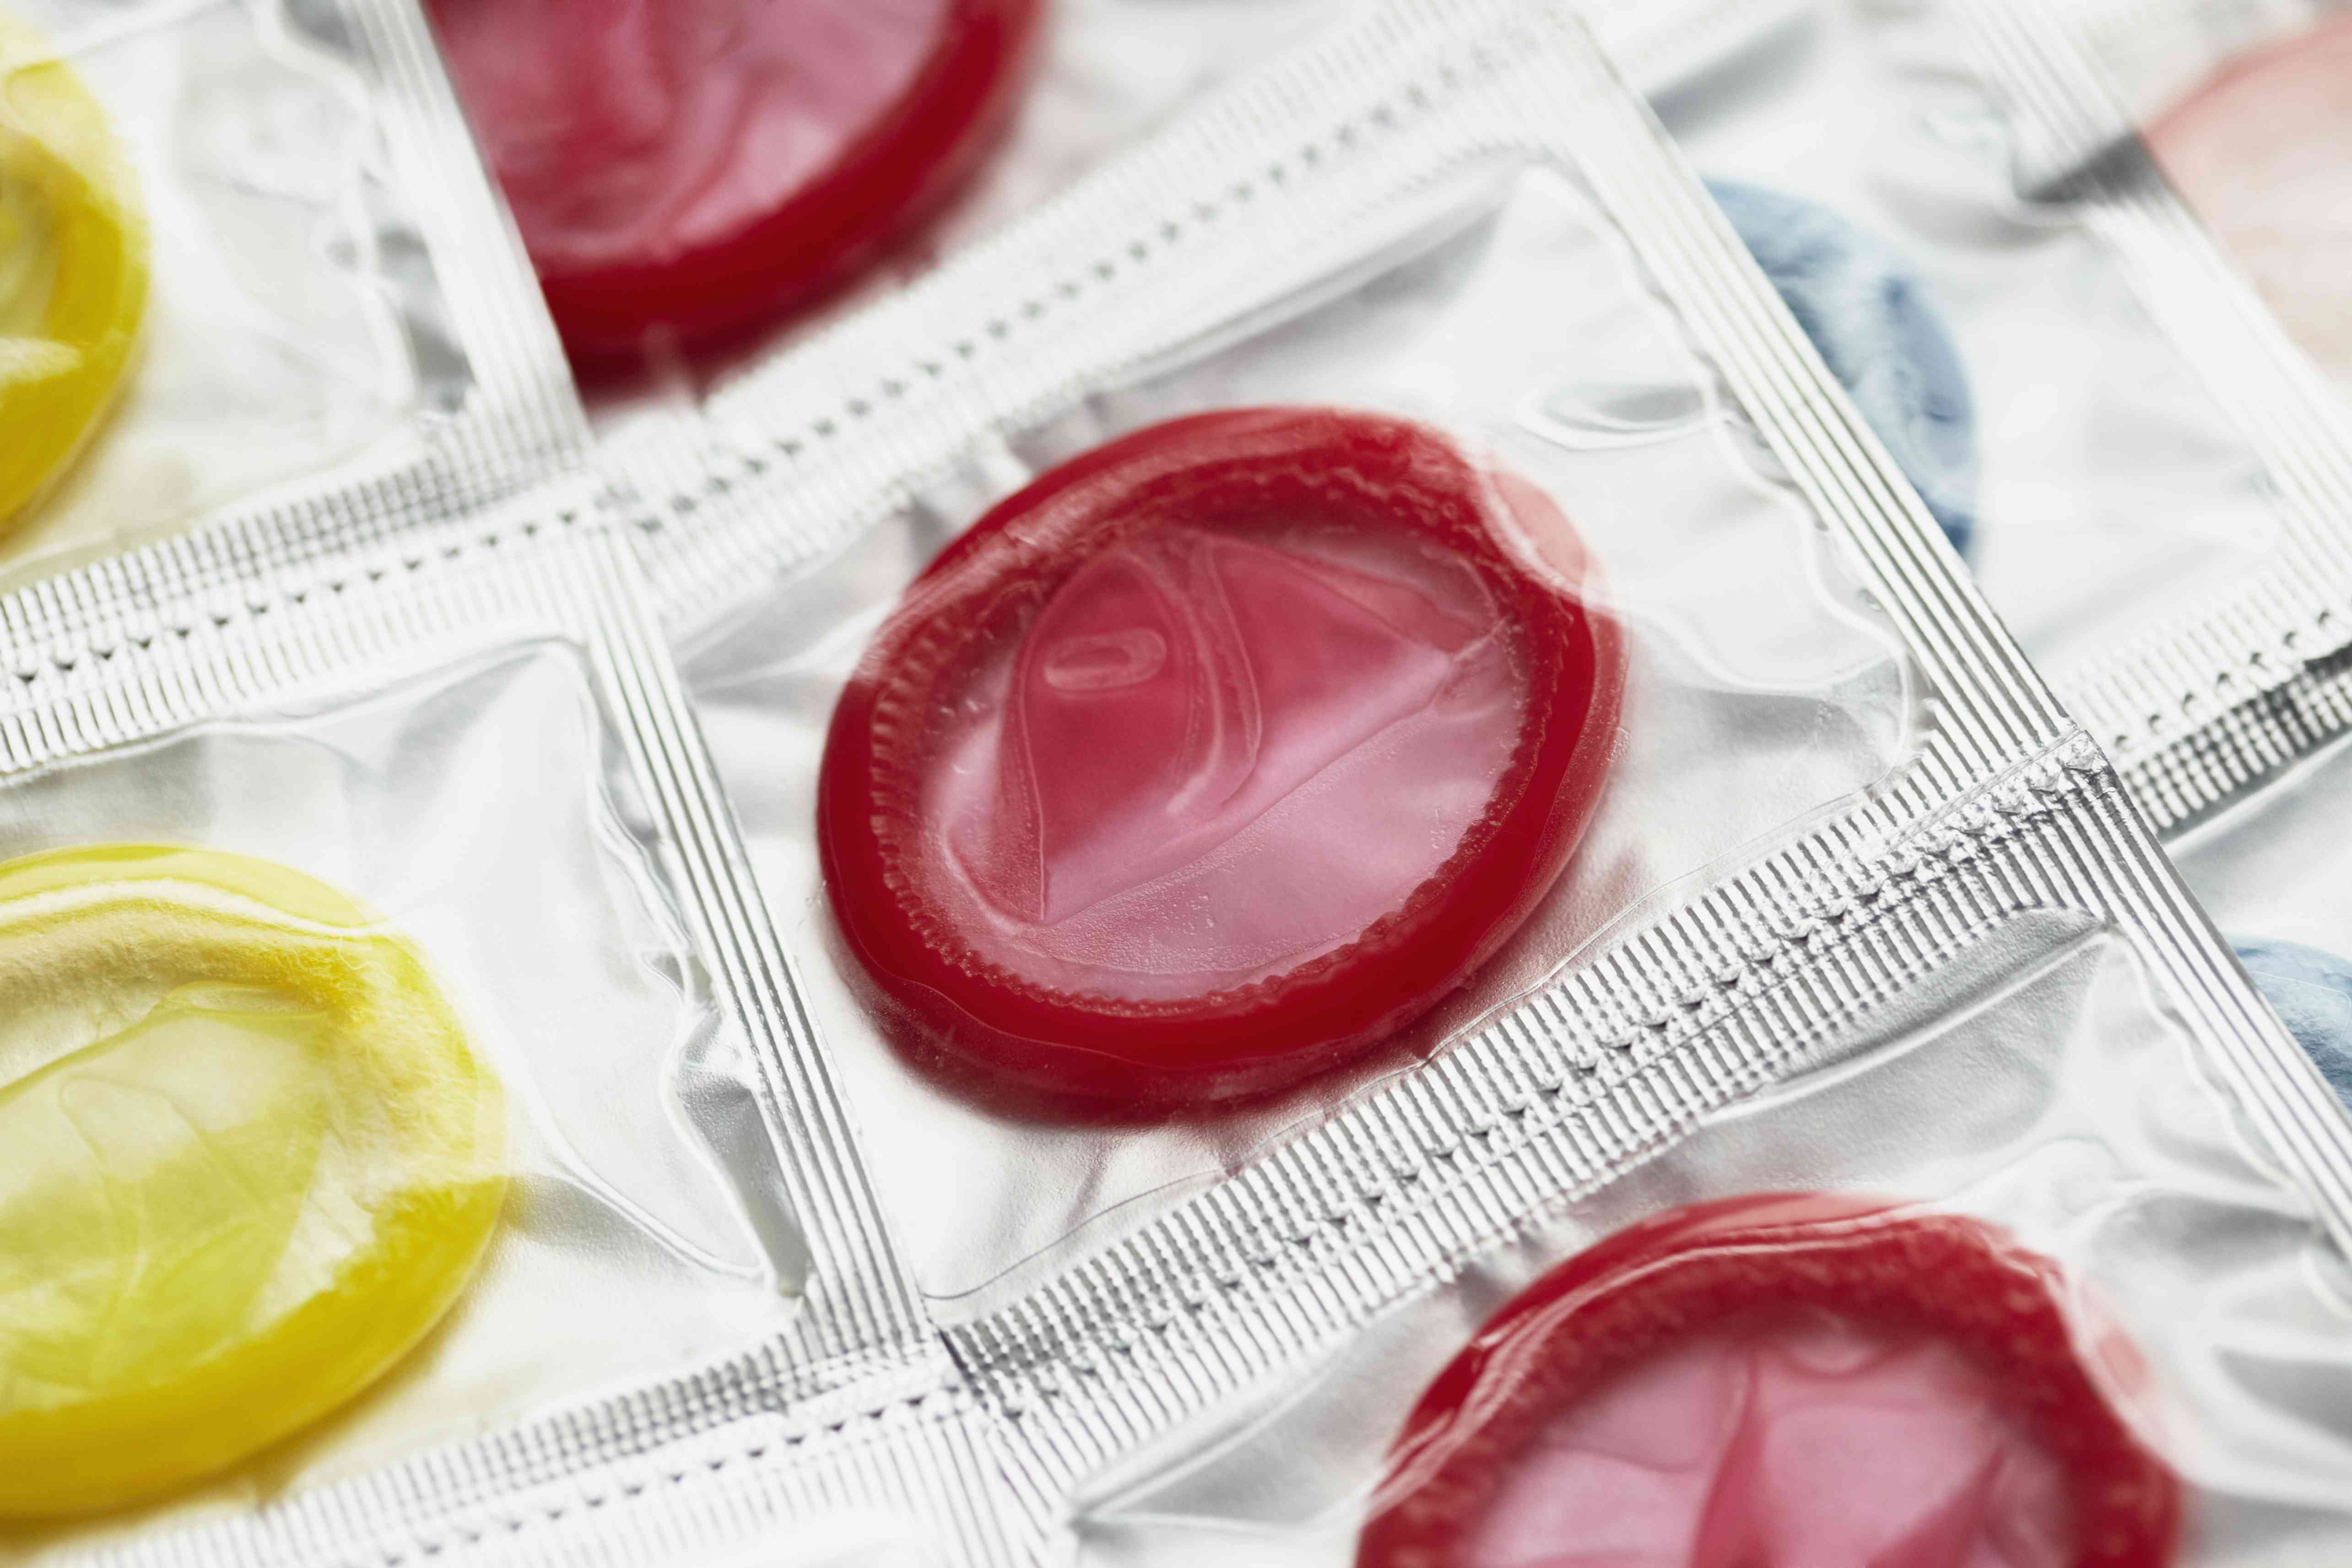 为什么使用彩色避孕套可以让安全性行为变得有趣